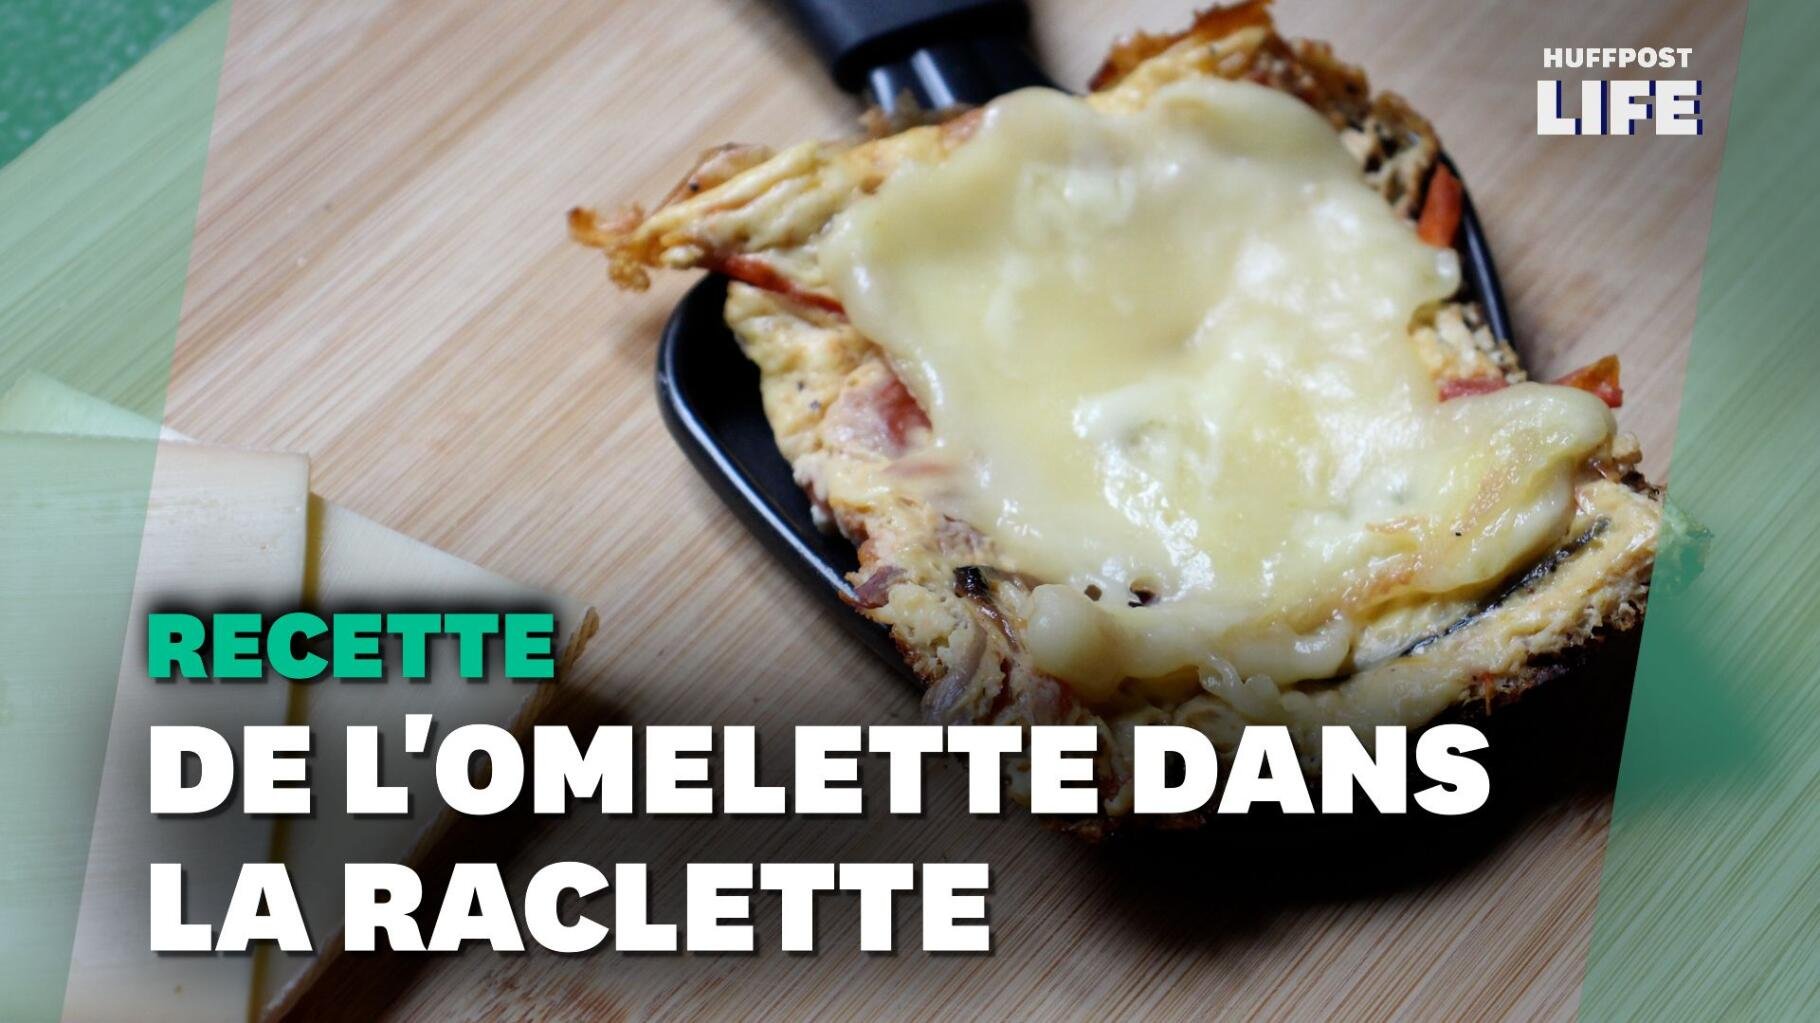 Pour votre prochaine raclette, remplacez les patates par de l’omelette